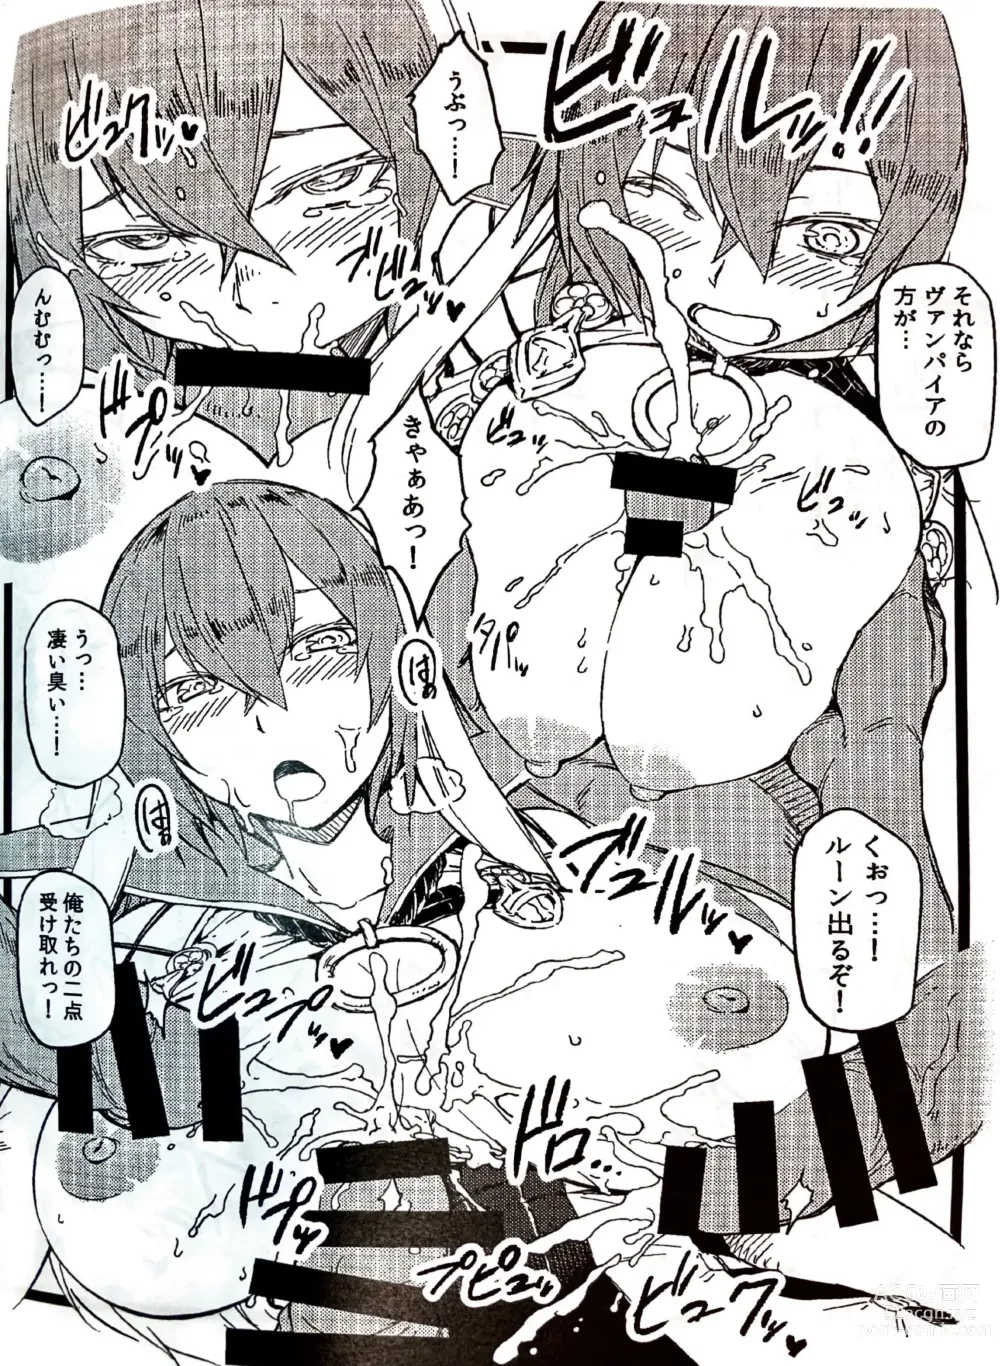 Page 3 of doujinshi Soshage no Musume C92